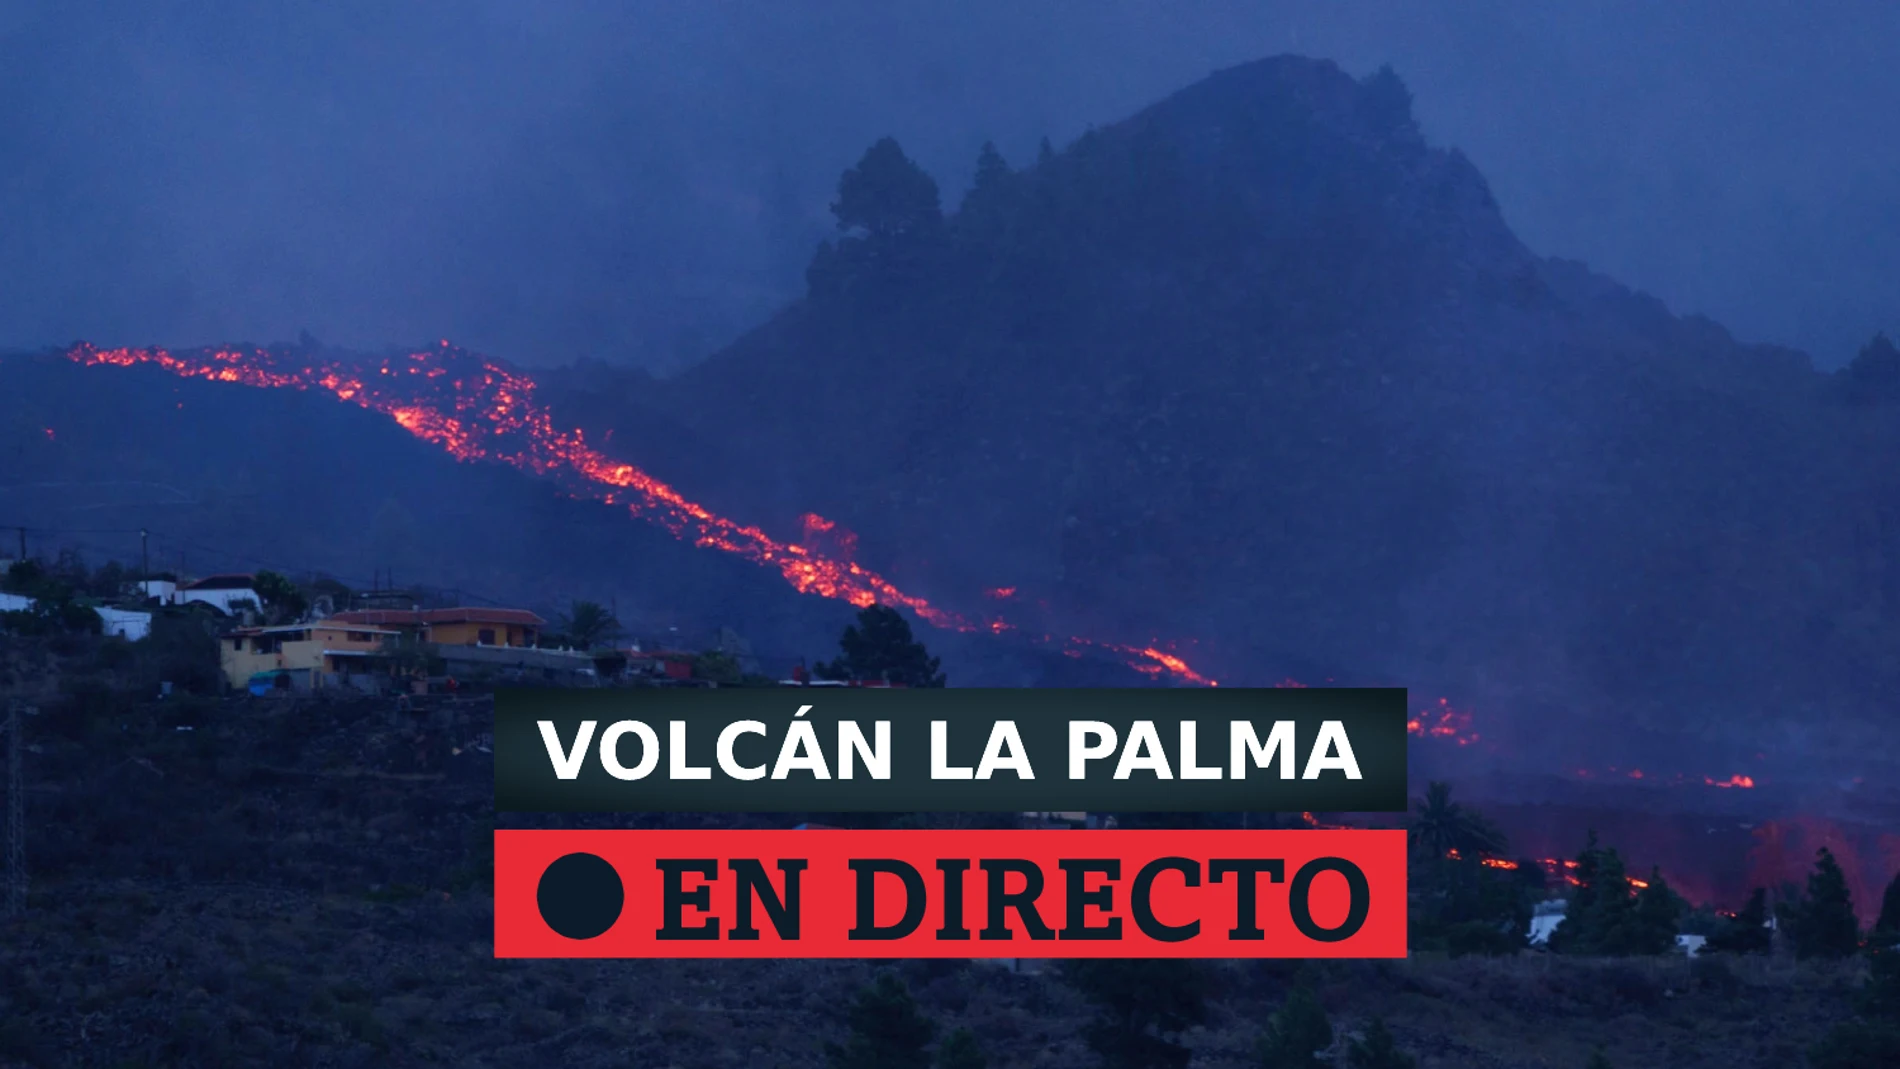 Evolución de la erupción del volcán de La Palma en directo y la llegada de la lava al mar